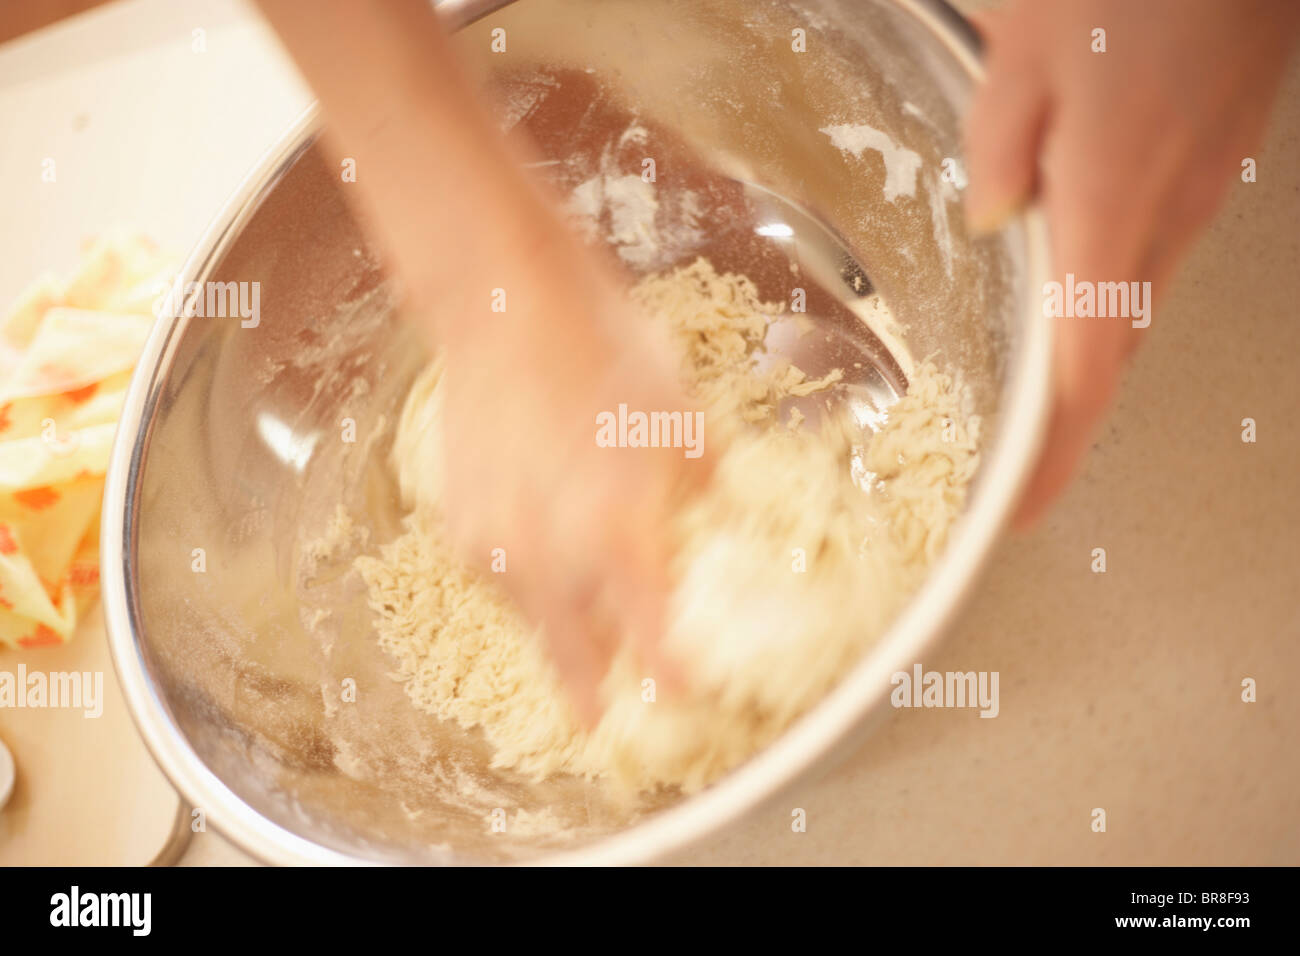 Femme faisant des bagels, faire la pâte, Close up, blurred motion Banque D'Images